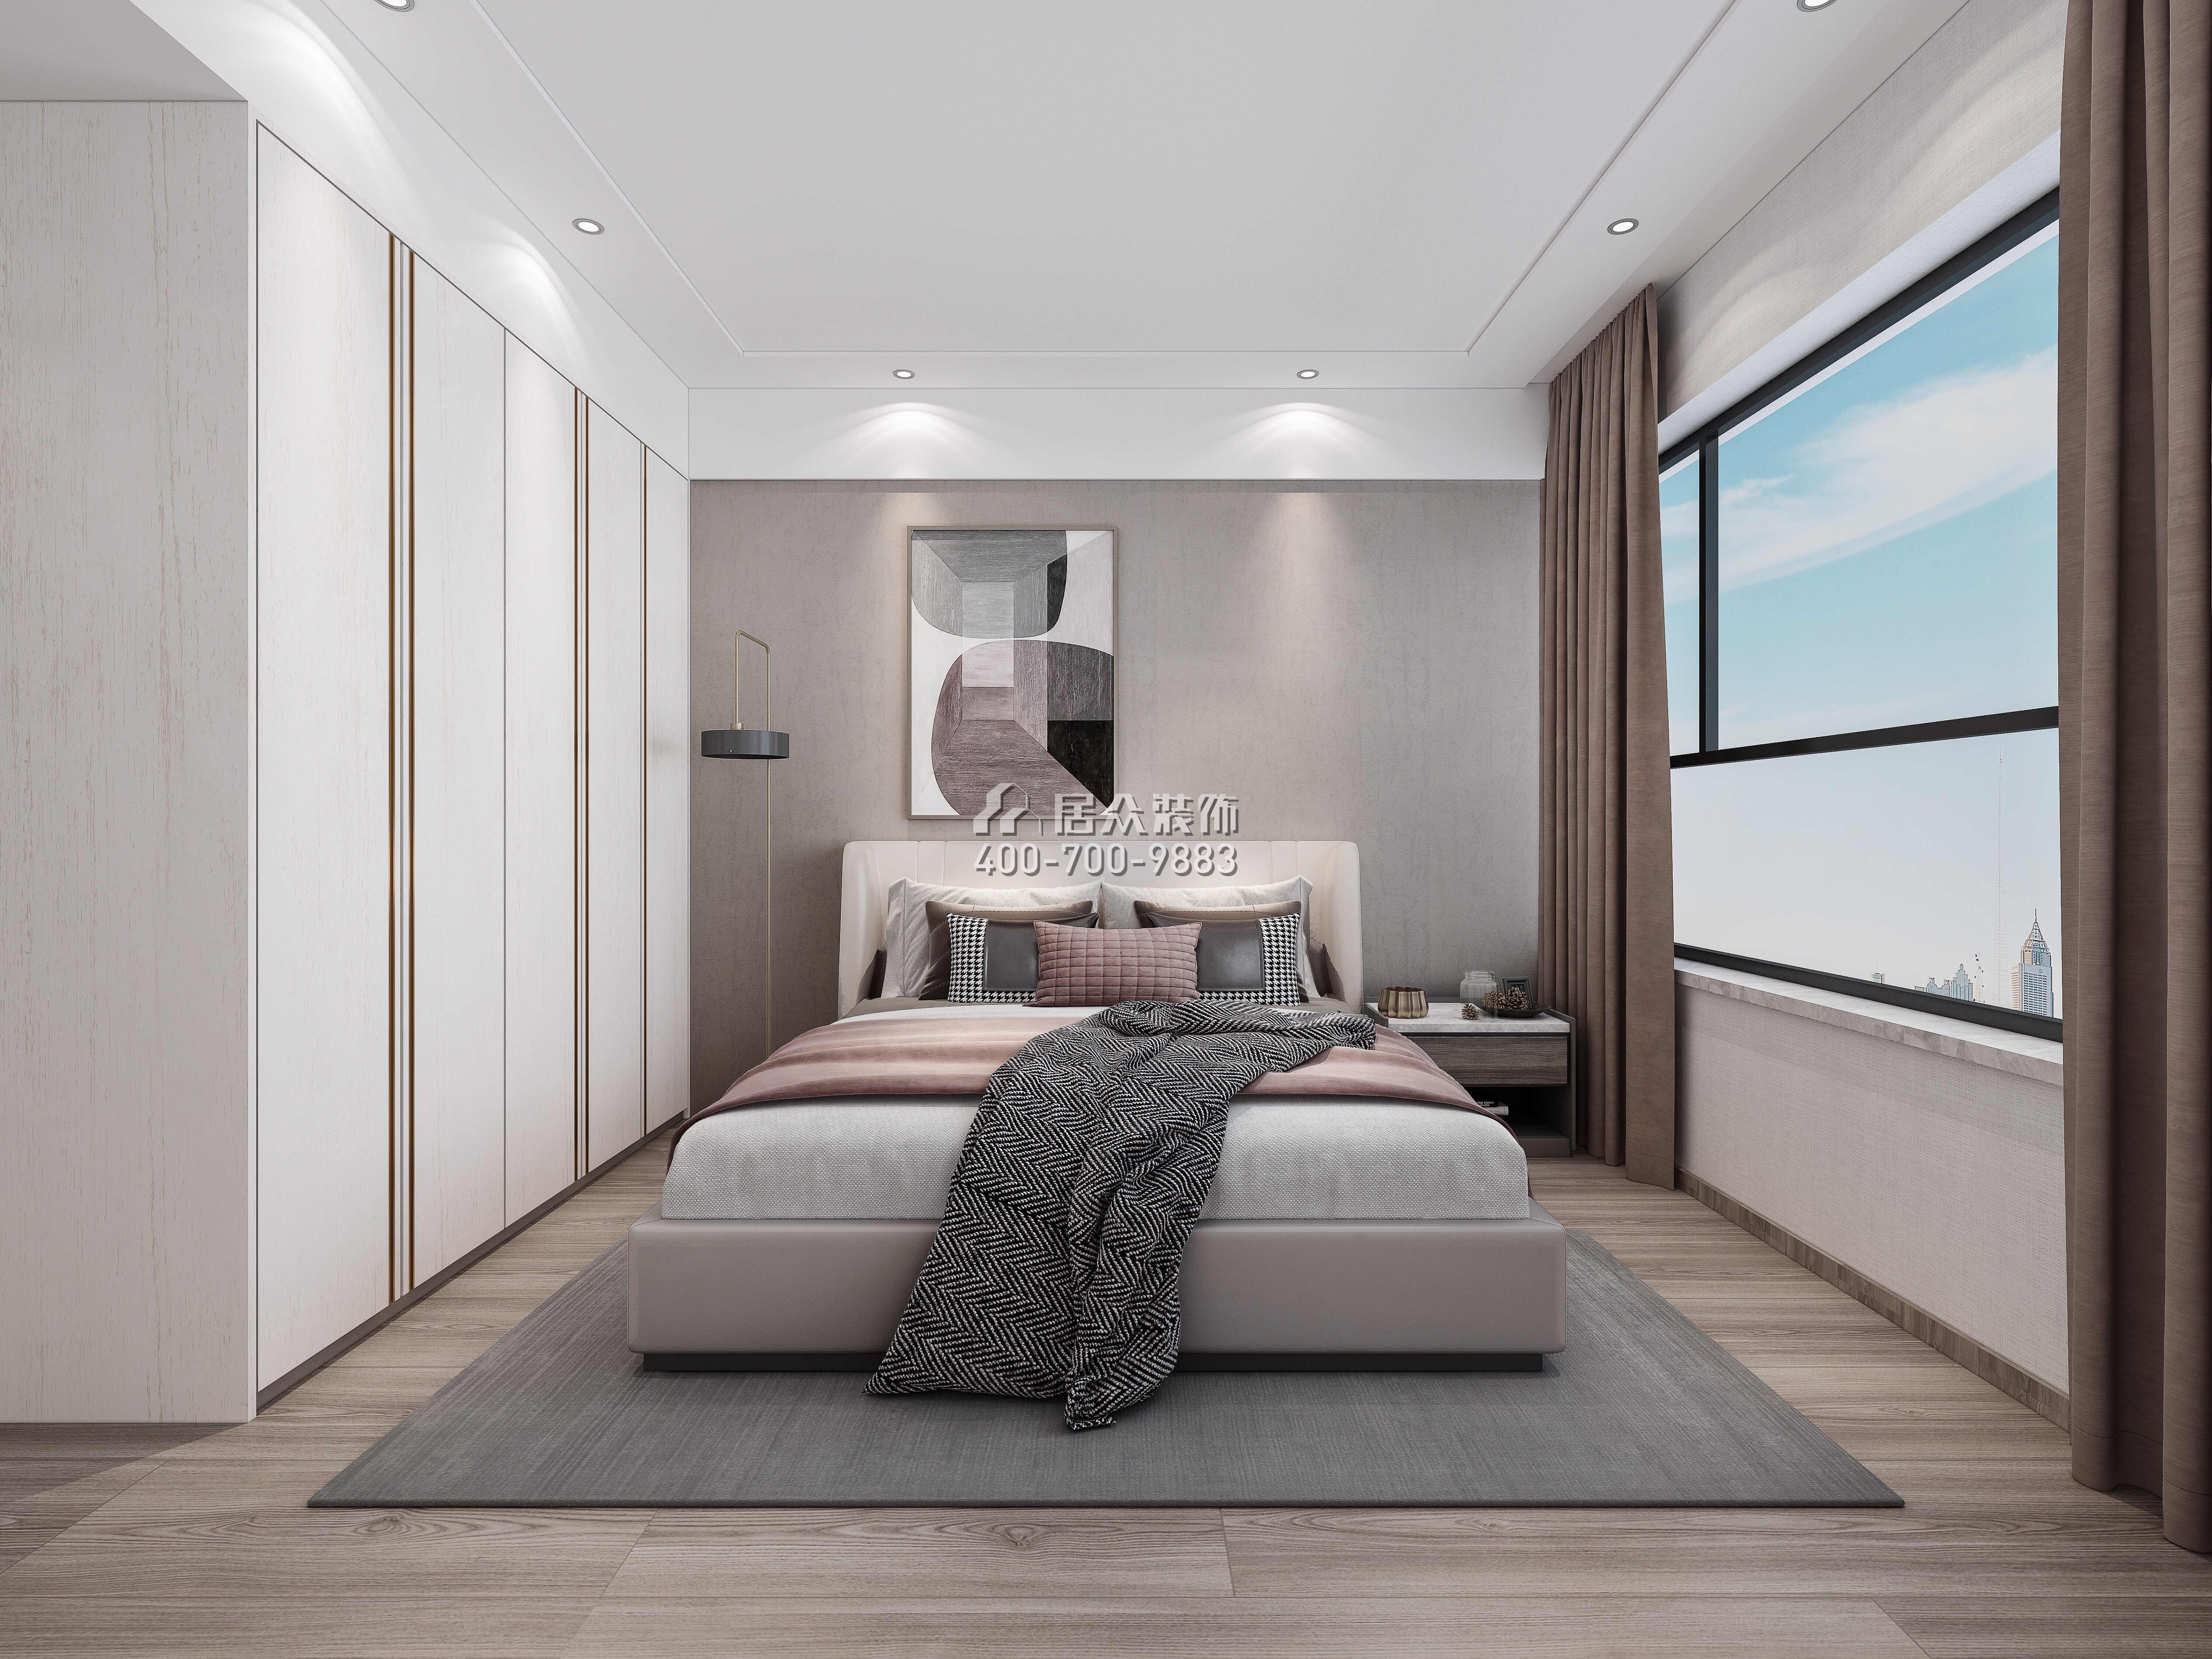 东关乐尚林居110平方米现代简约风格平层户型卧室装修效果图